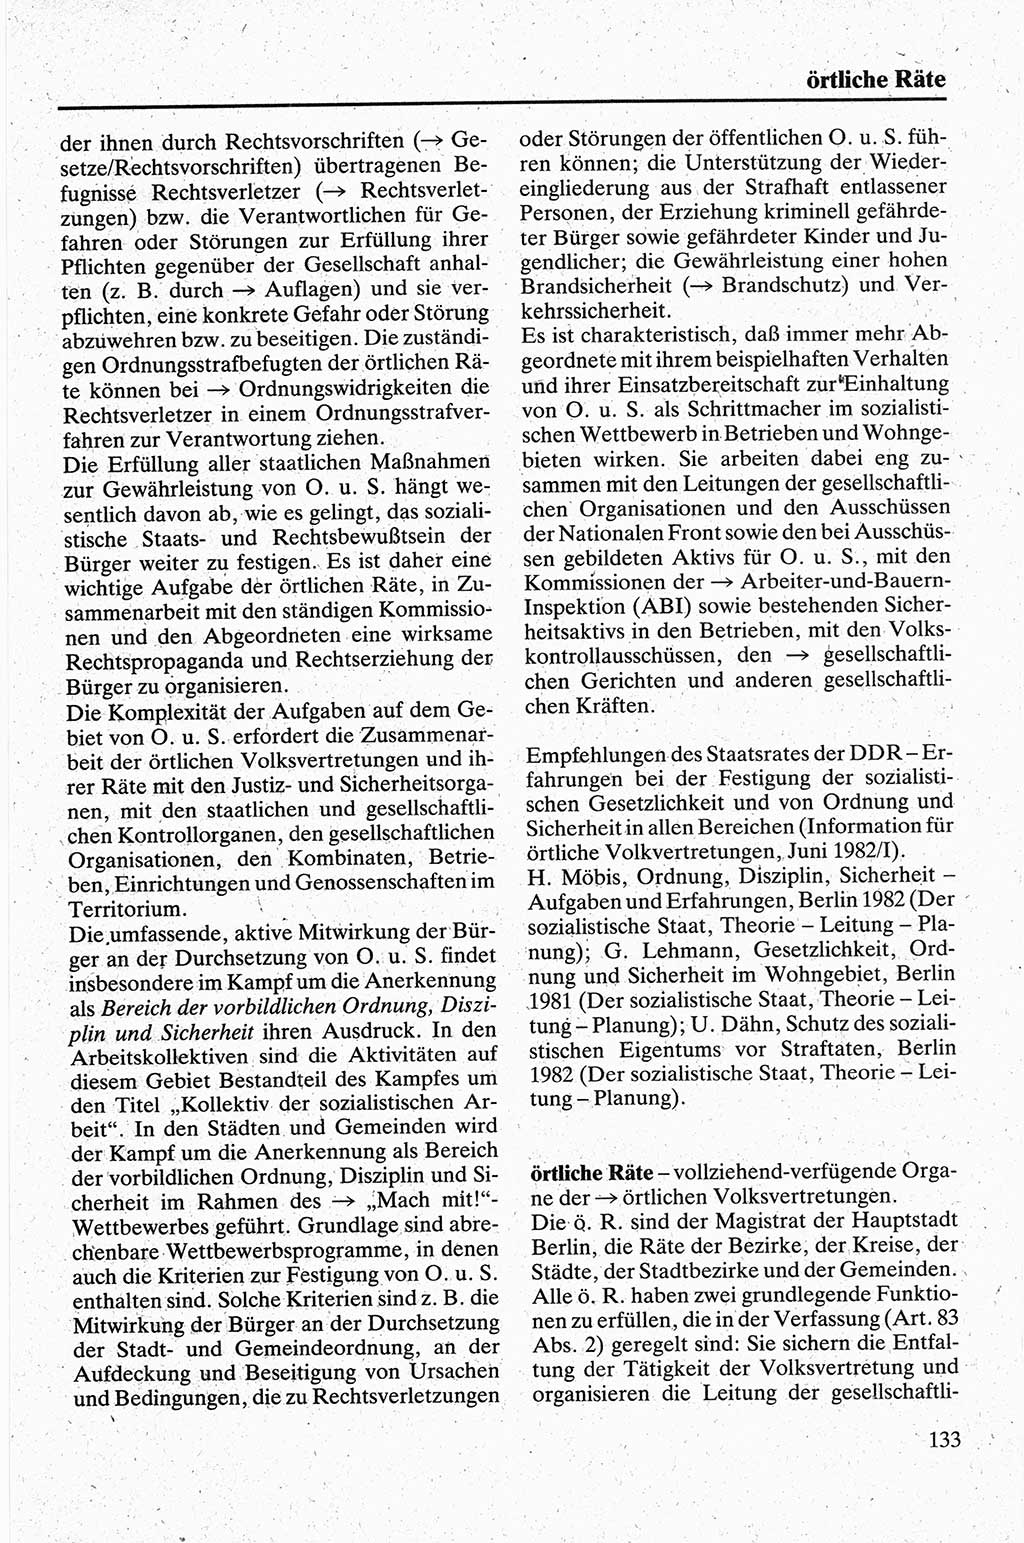 Handbuch für den Abgeordneten [Deutsche Demokratische Republik (DDR)] 1984, Seite 133 (Hb. Abg. DDR 1984, S. 133)